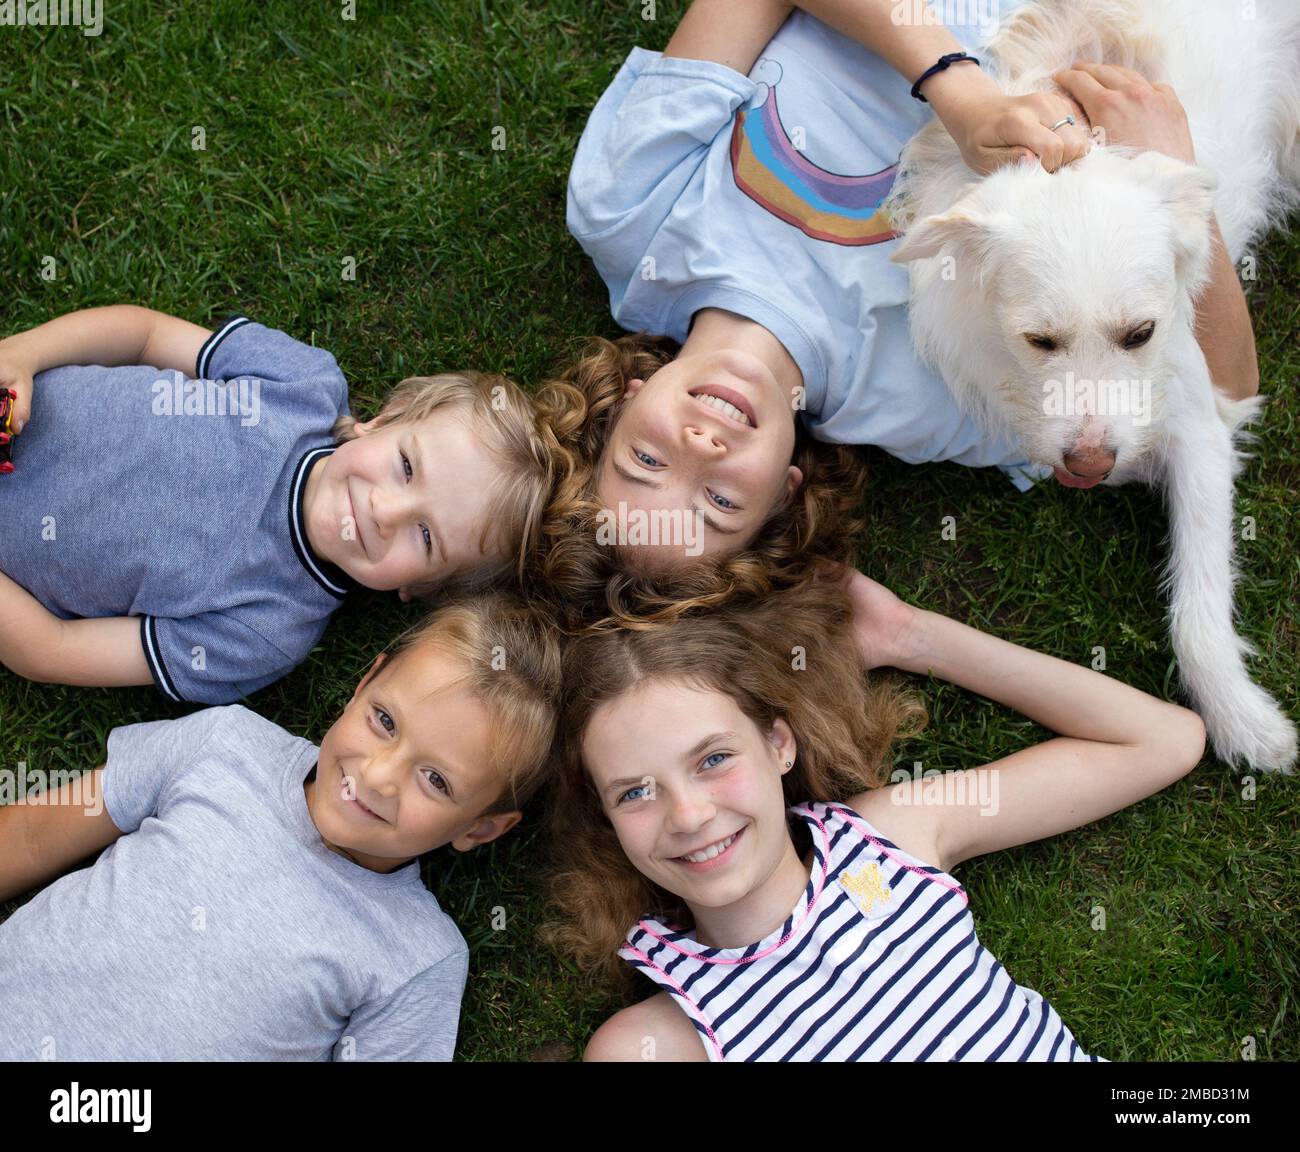 Bambini felici, ragazzi e ragazze di diverse età, sdraiati sull'erba in estate, vista dall'alto. fratelli, sorelle e cani sorridenti godono la vita, divertirsi insieme Foto Stock